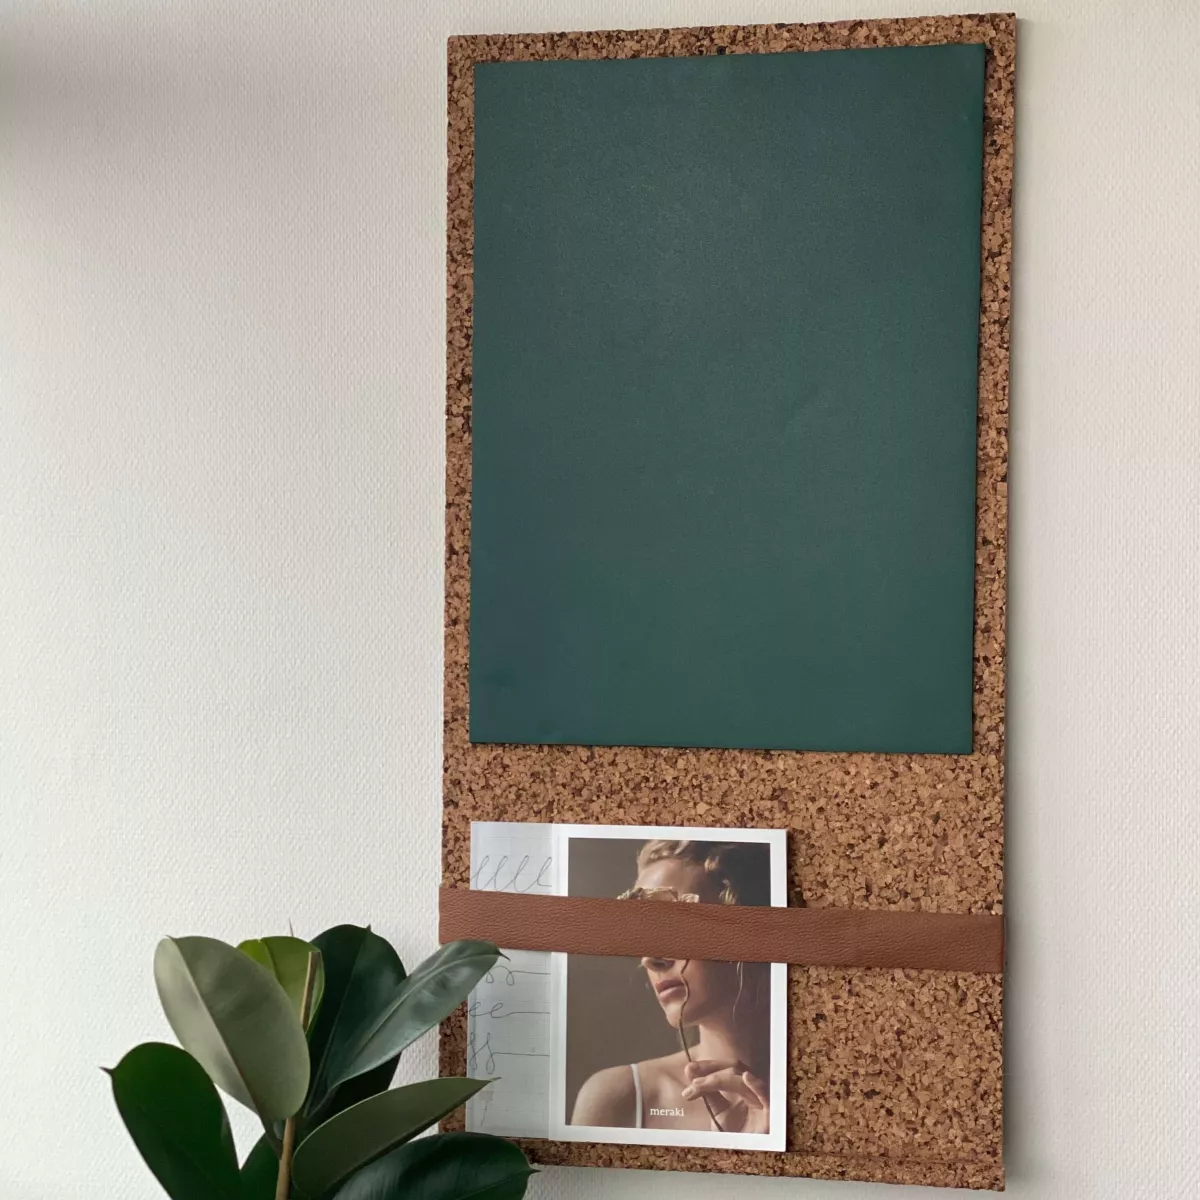 #1 - OEKOBOARD - Sandslebet opslagstavle med magnet- og grøn tavlefolie